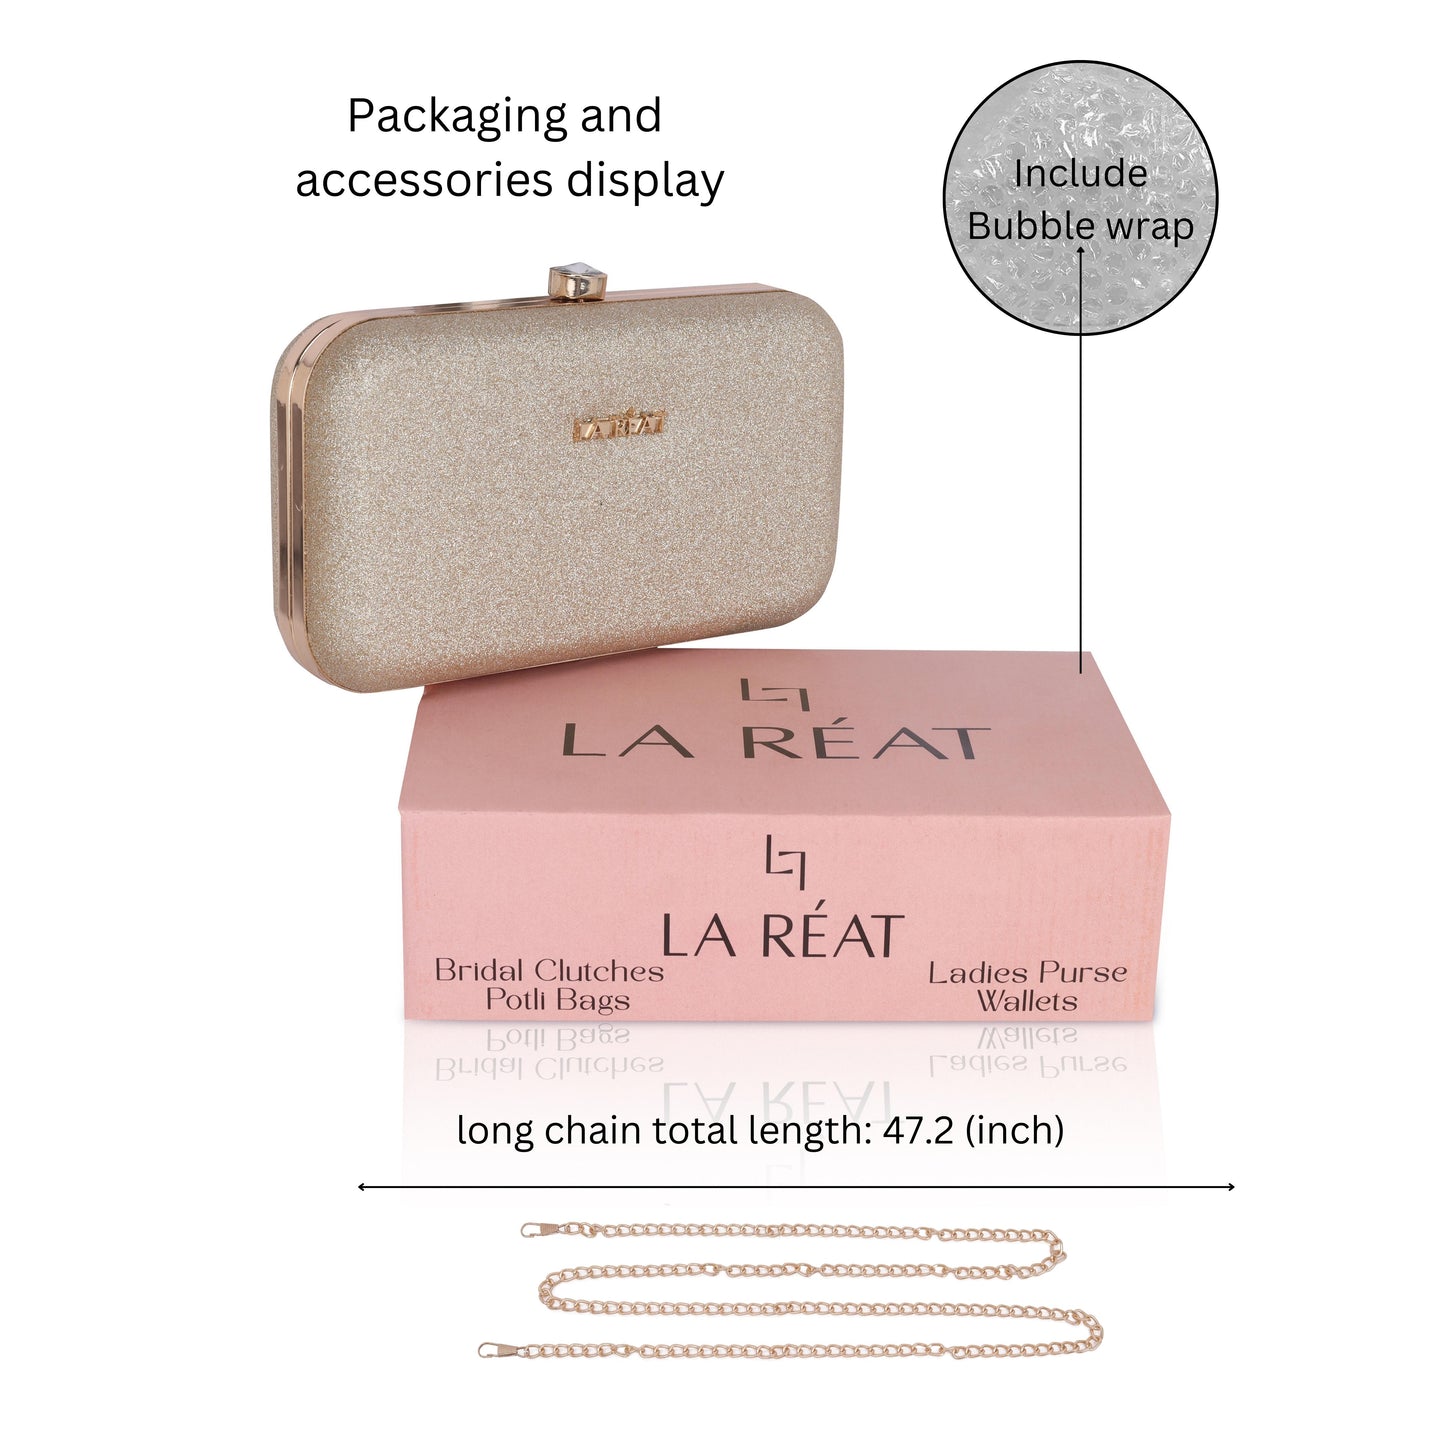 La Reat's Sparkle Women's Owal Box Clutch Purse, Ladies Purse Wallets, Evening Clutches, Handbags. Potli Bags-Sparkle-Gold